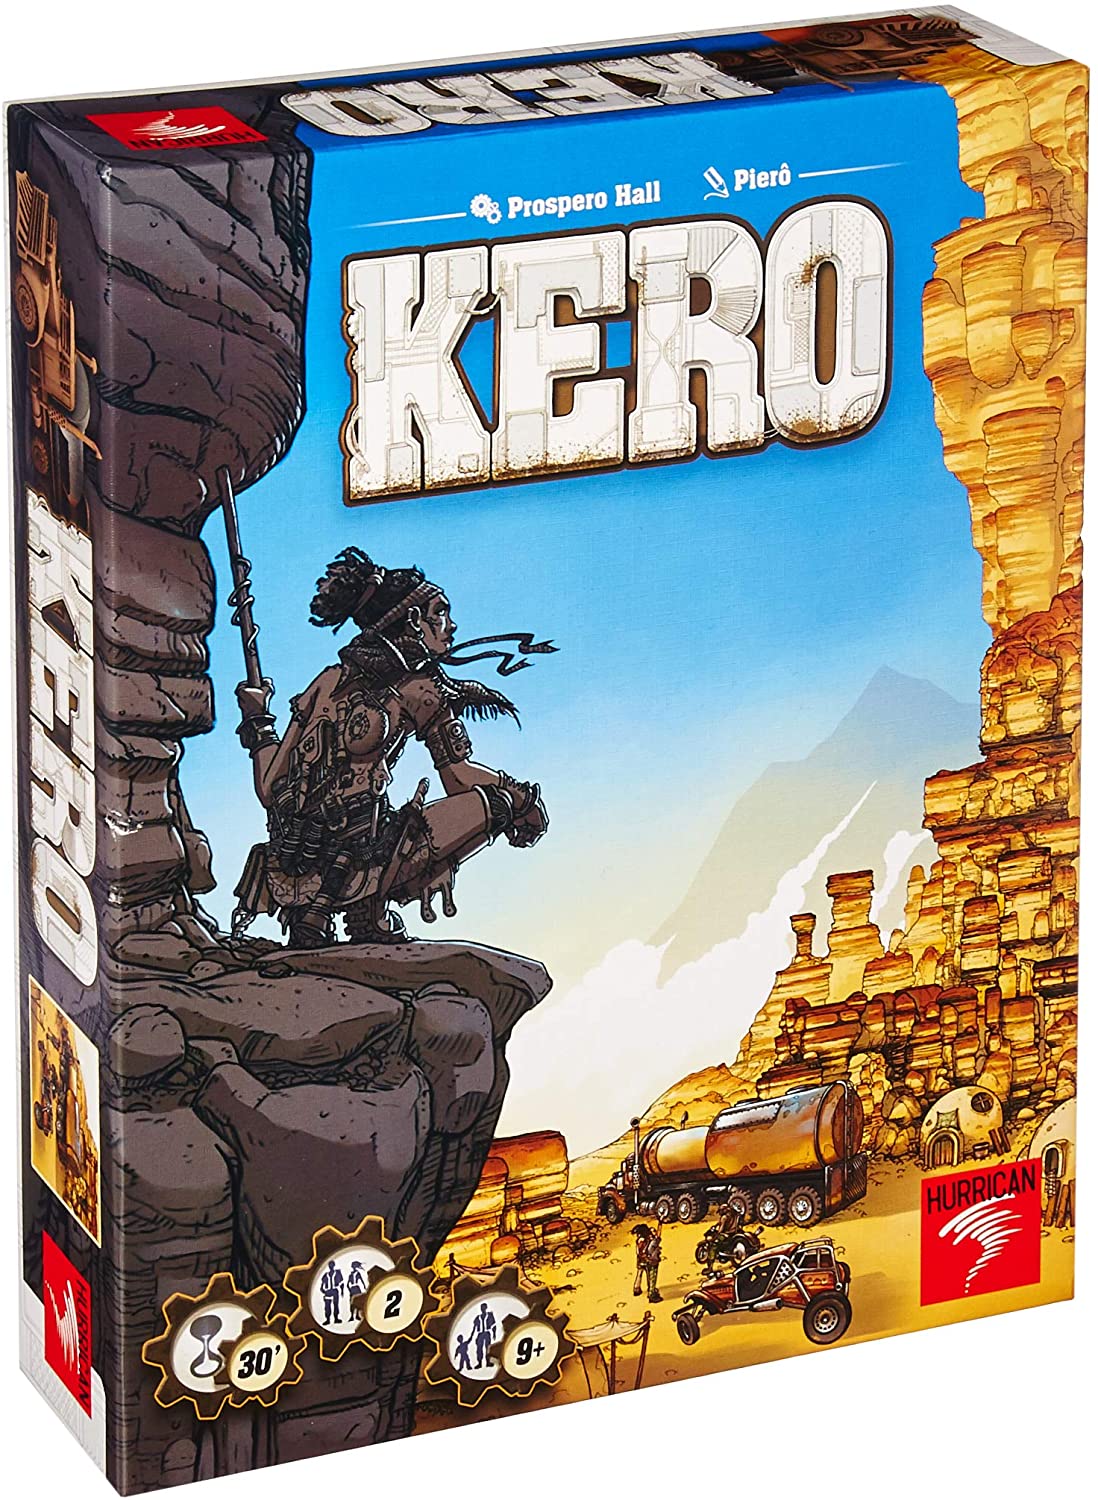 Kero Board Game by Hurrican